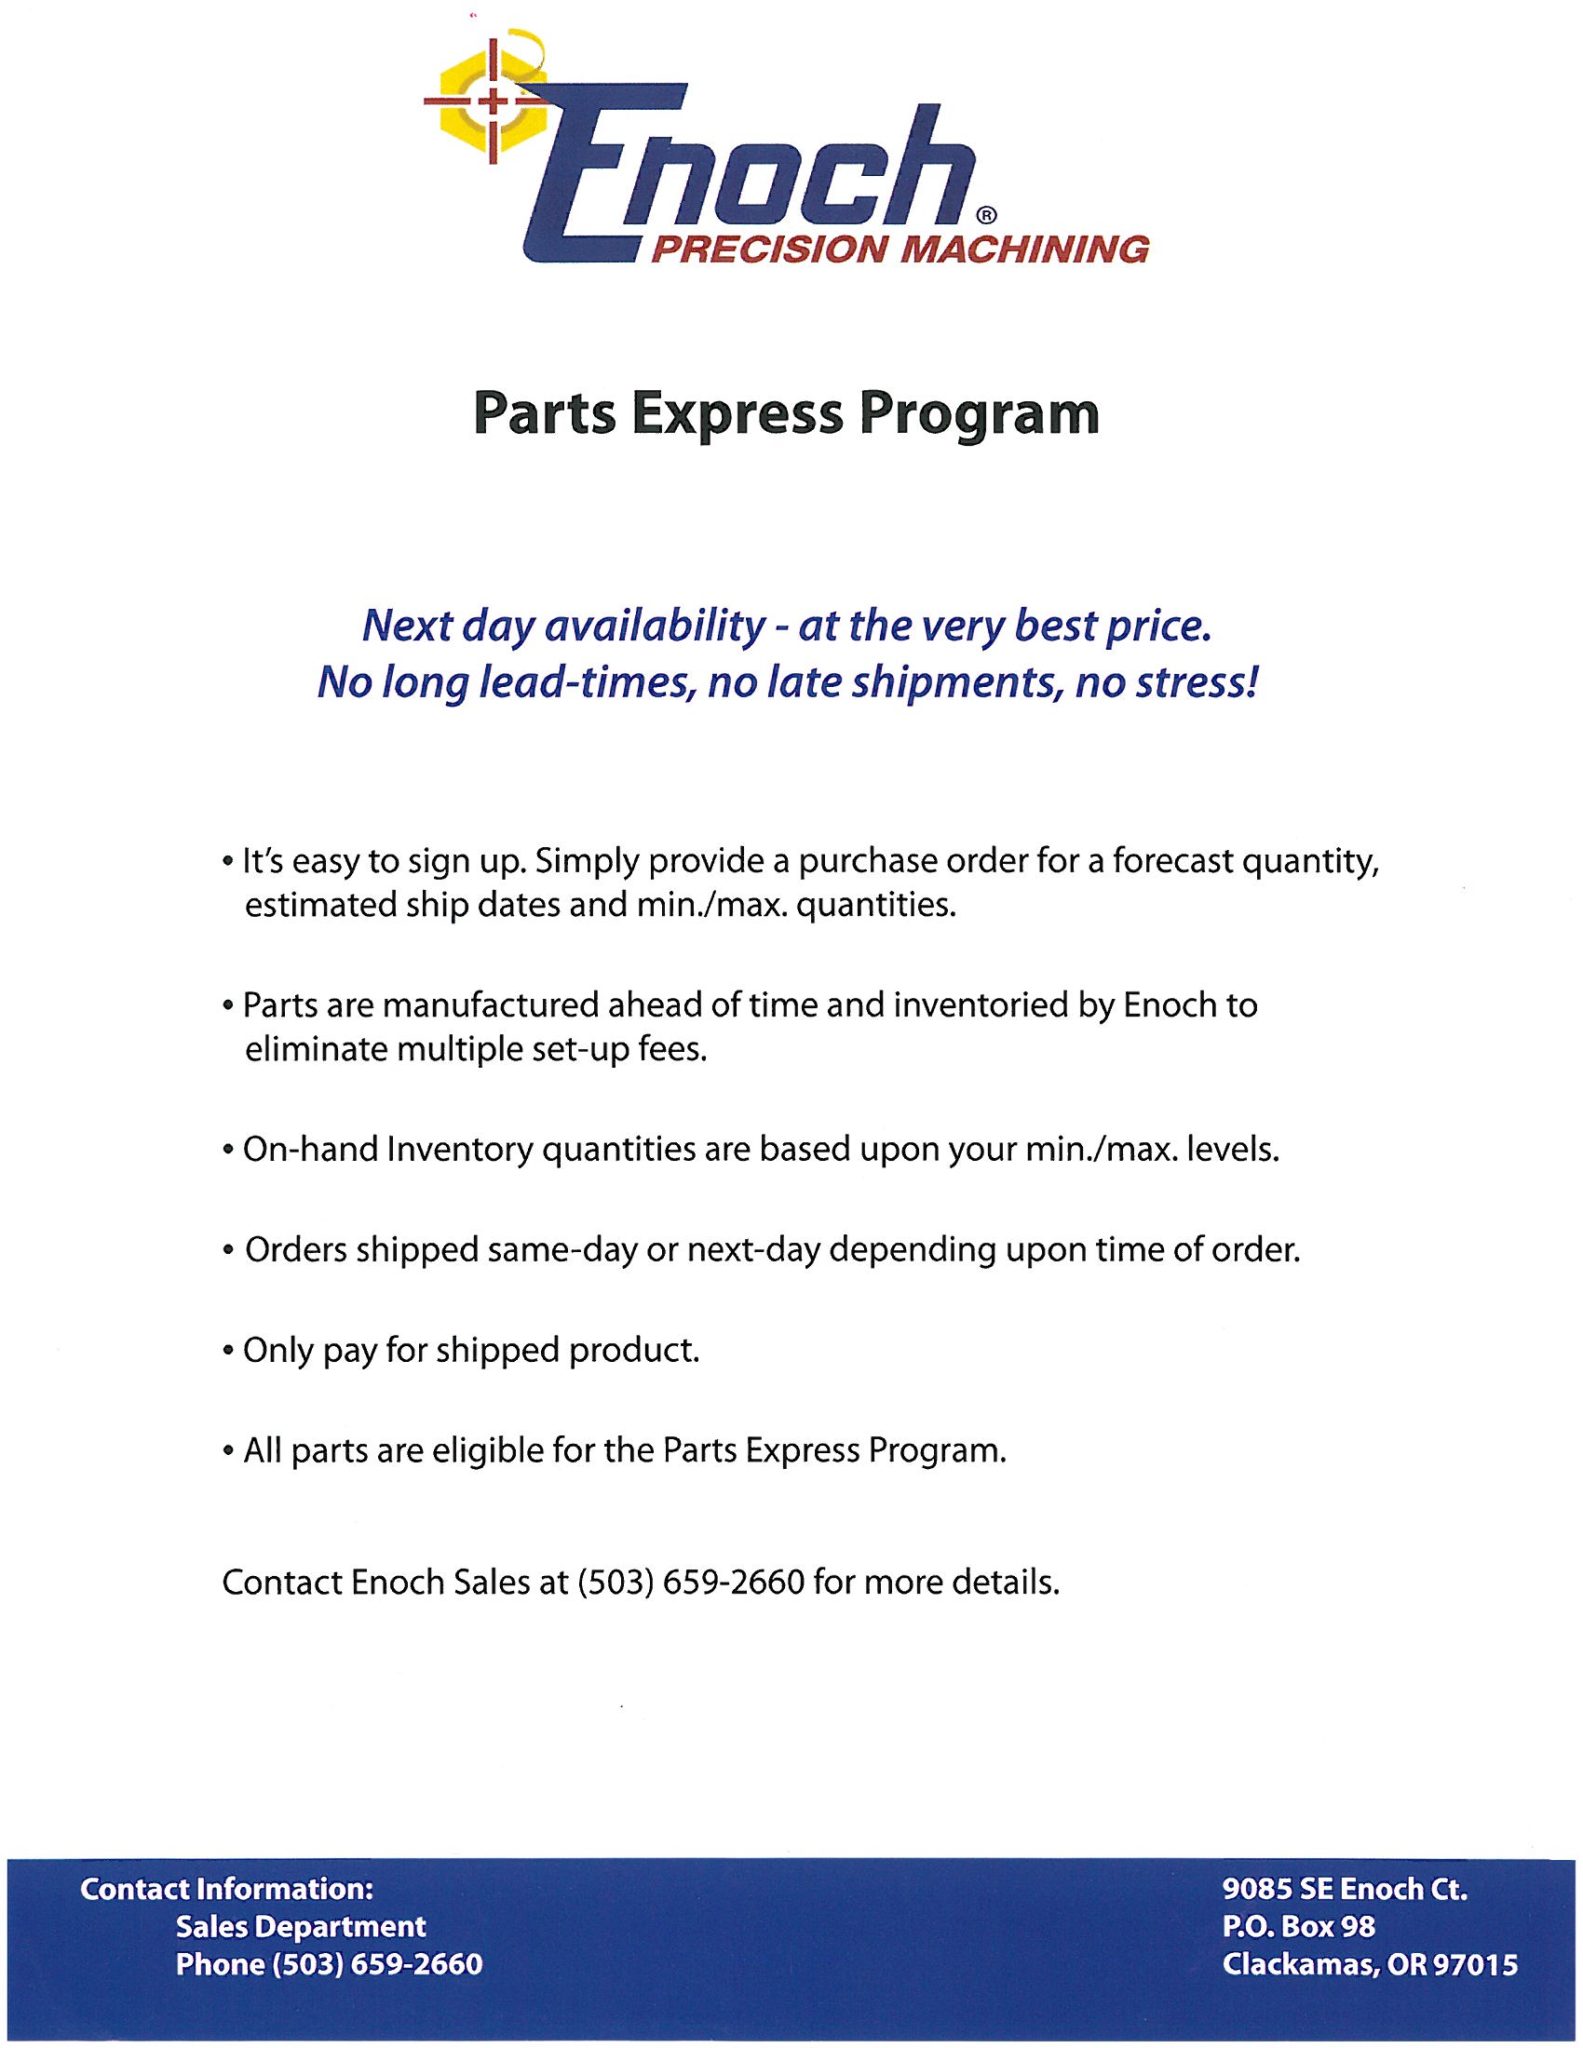 Parts Express Image